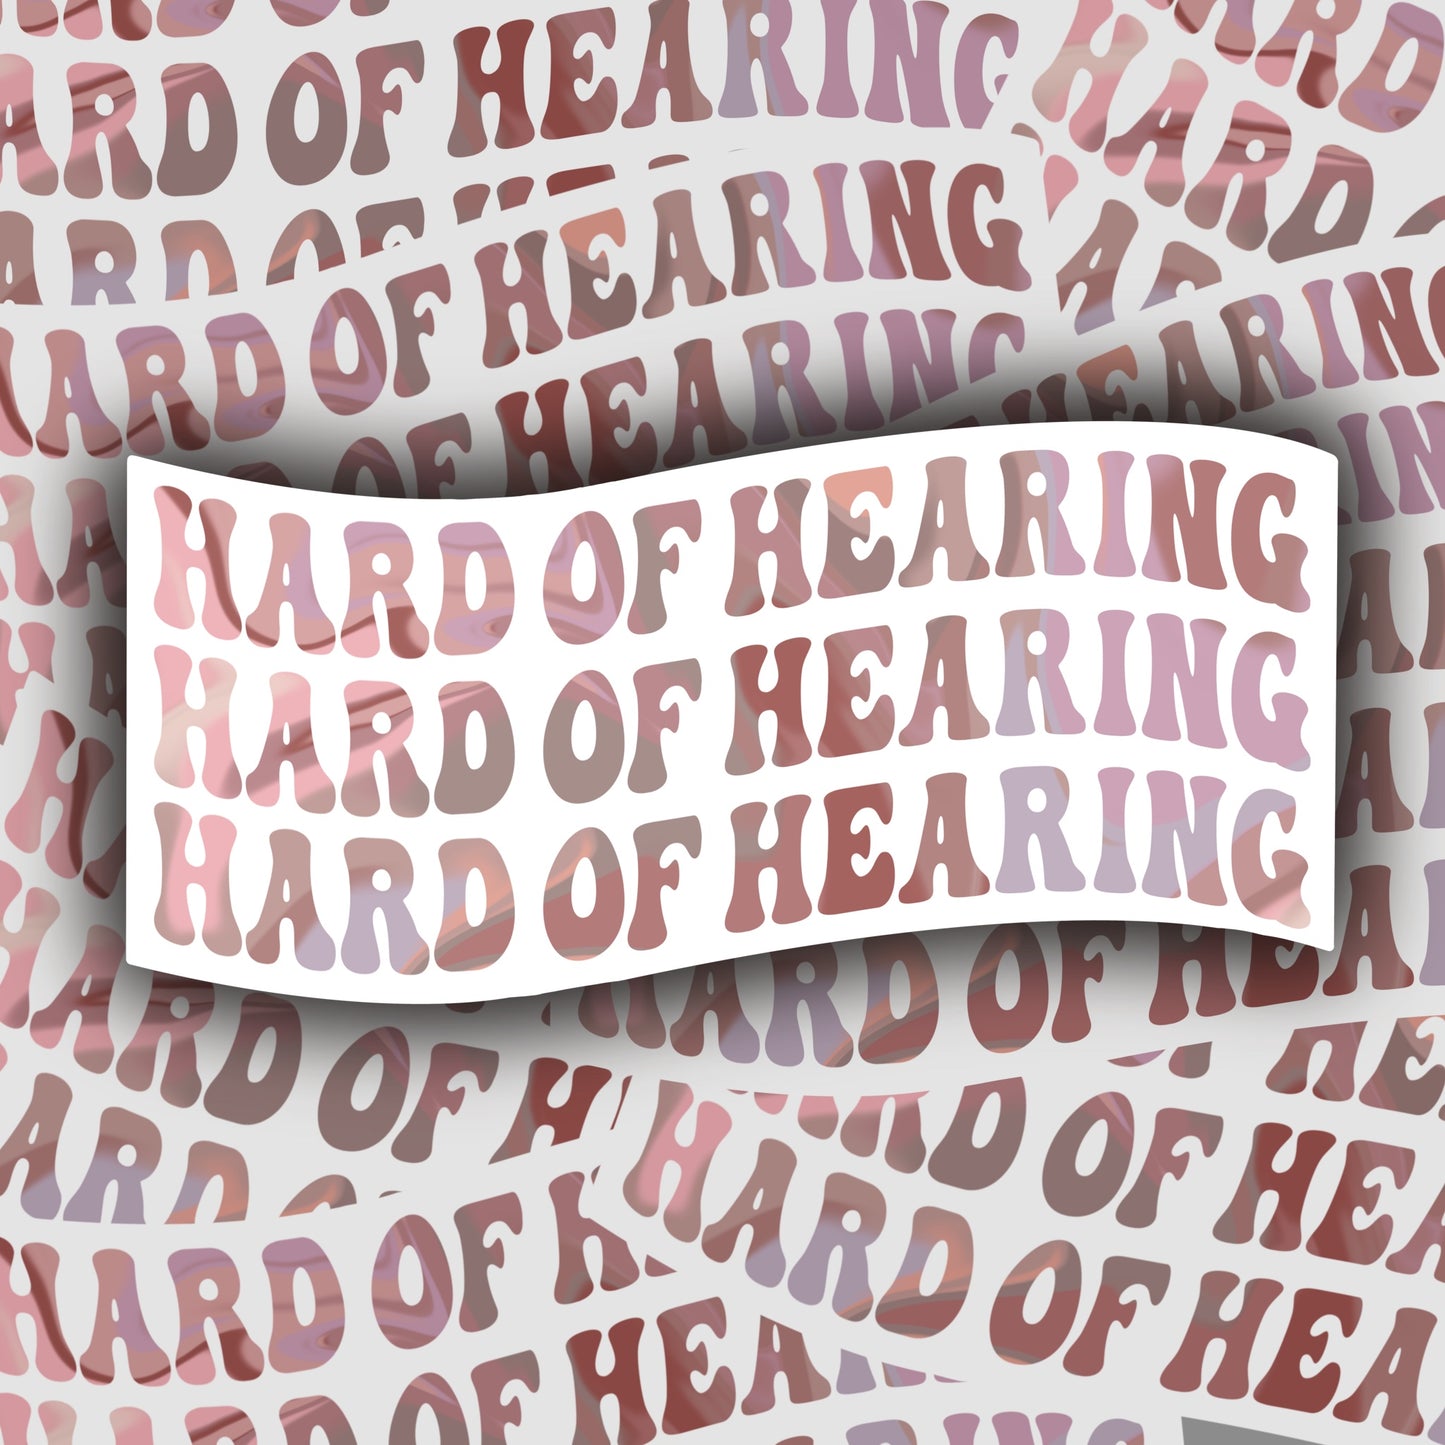 Hard of Hearing Sticker (Pink) - Waterproof/Dishwasher Safe